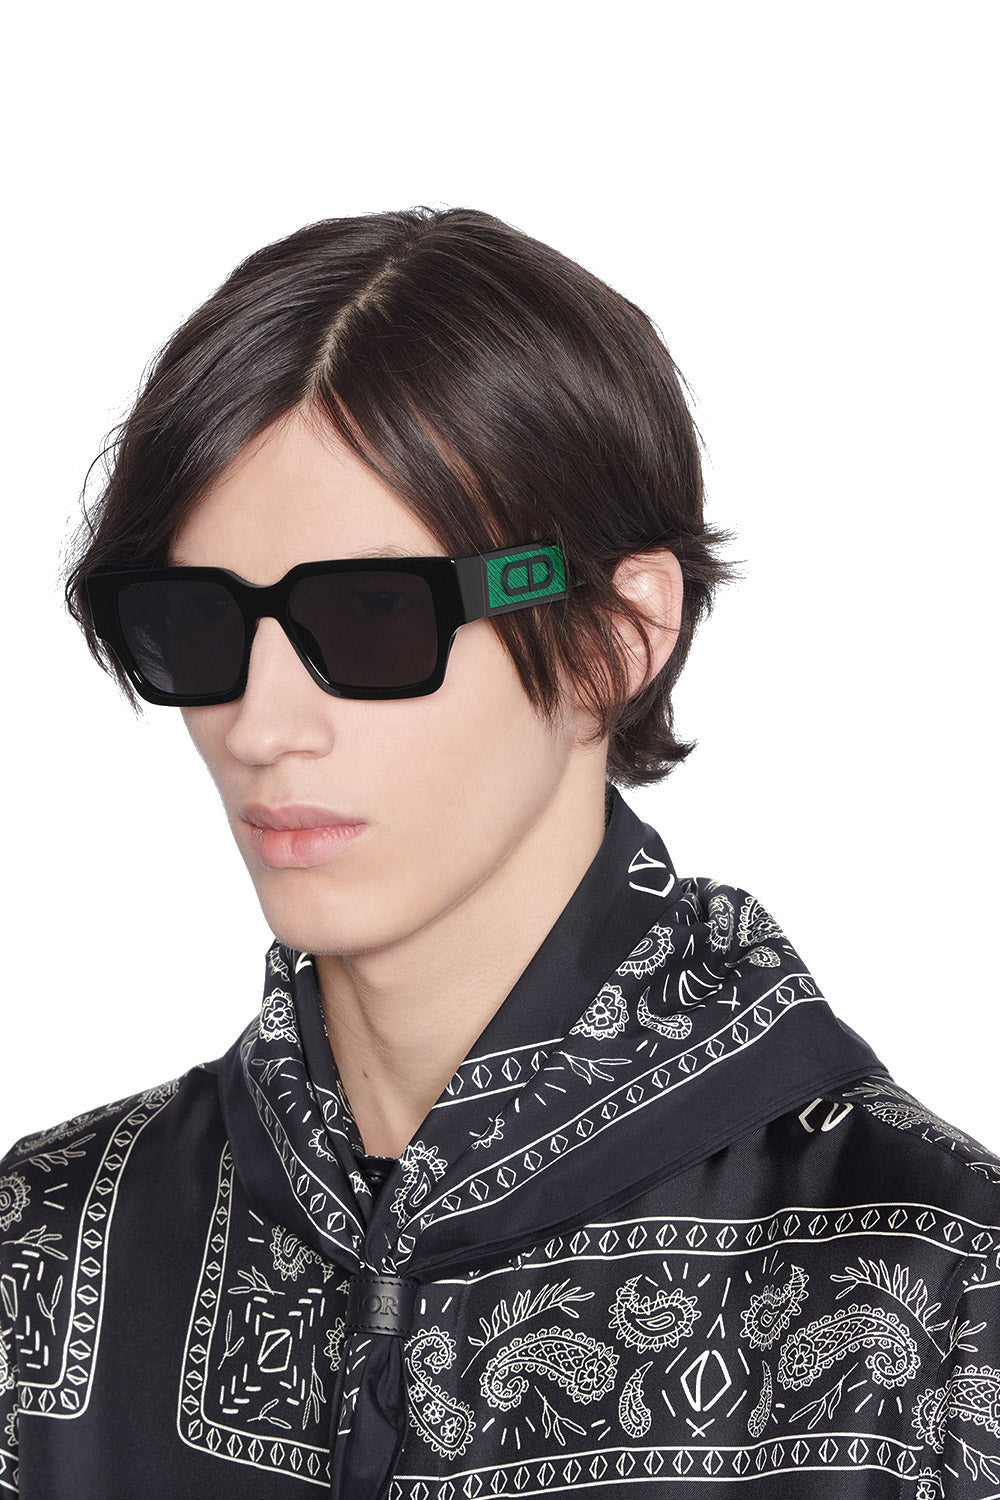 Louis vuitton sunglasses 1.1 - Gem